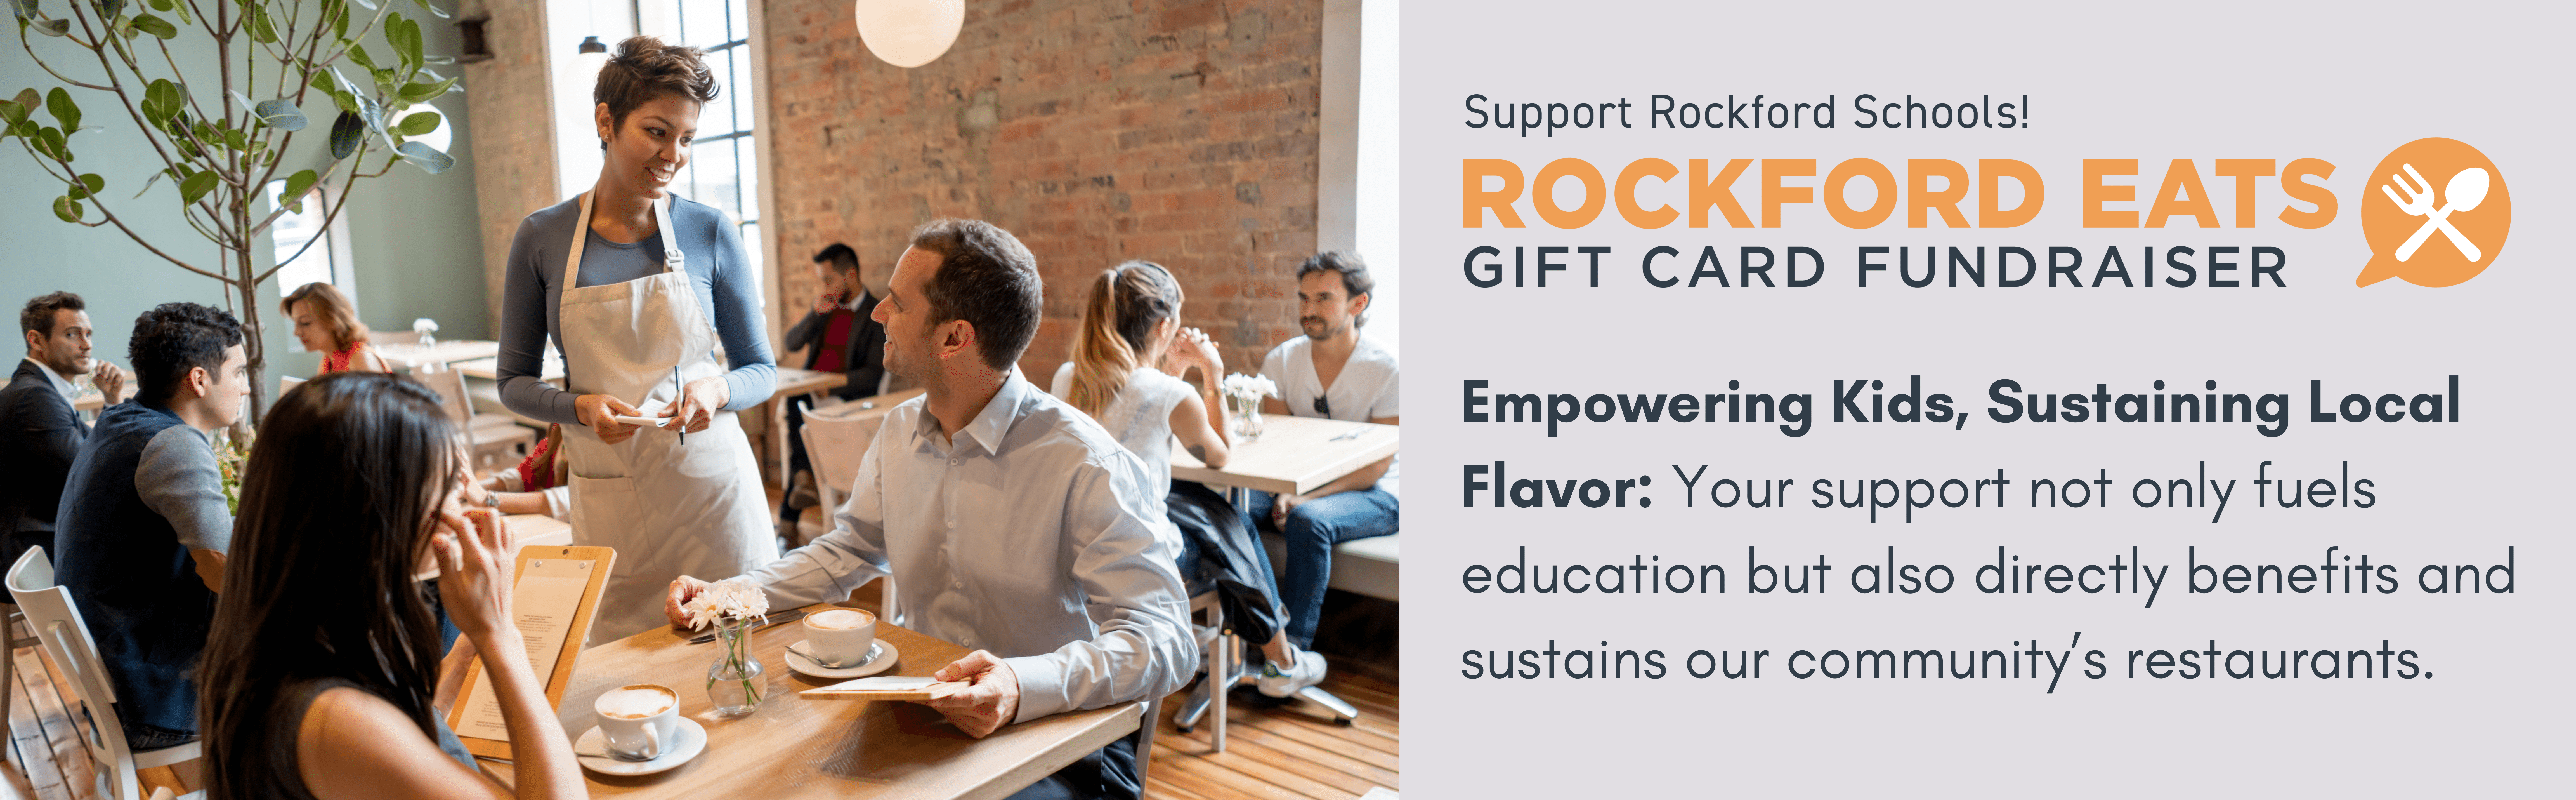 Rockford Eats Gift Card Fundraiser